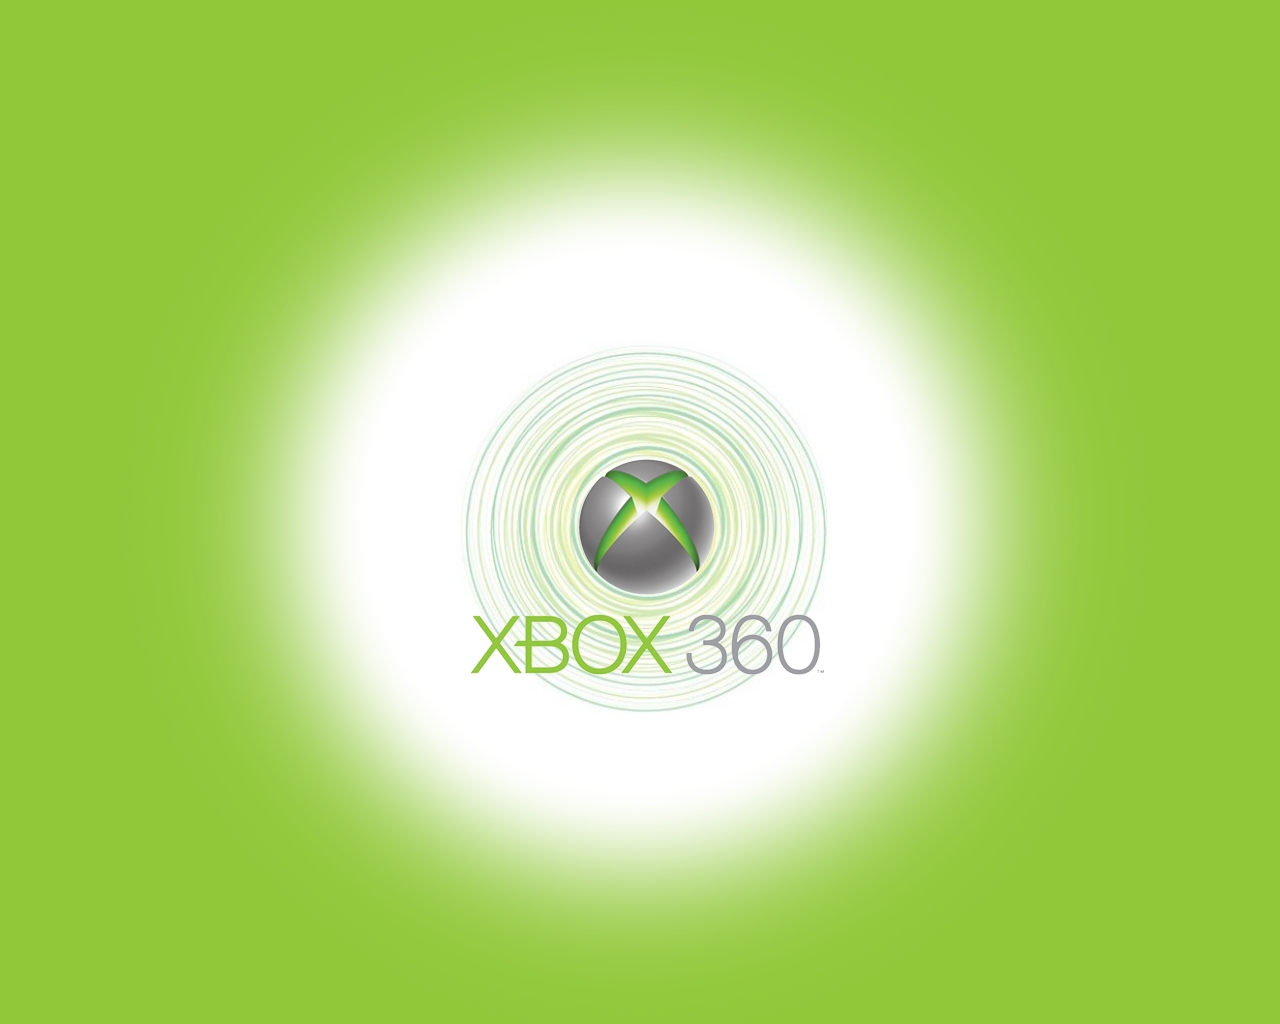 Скачать обои Xbox 360 на телефон бесплатно